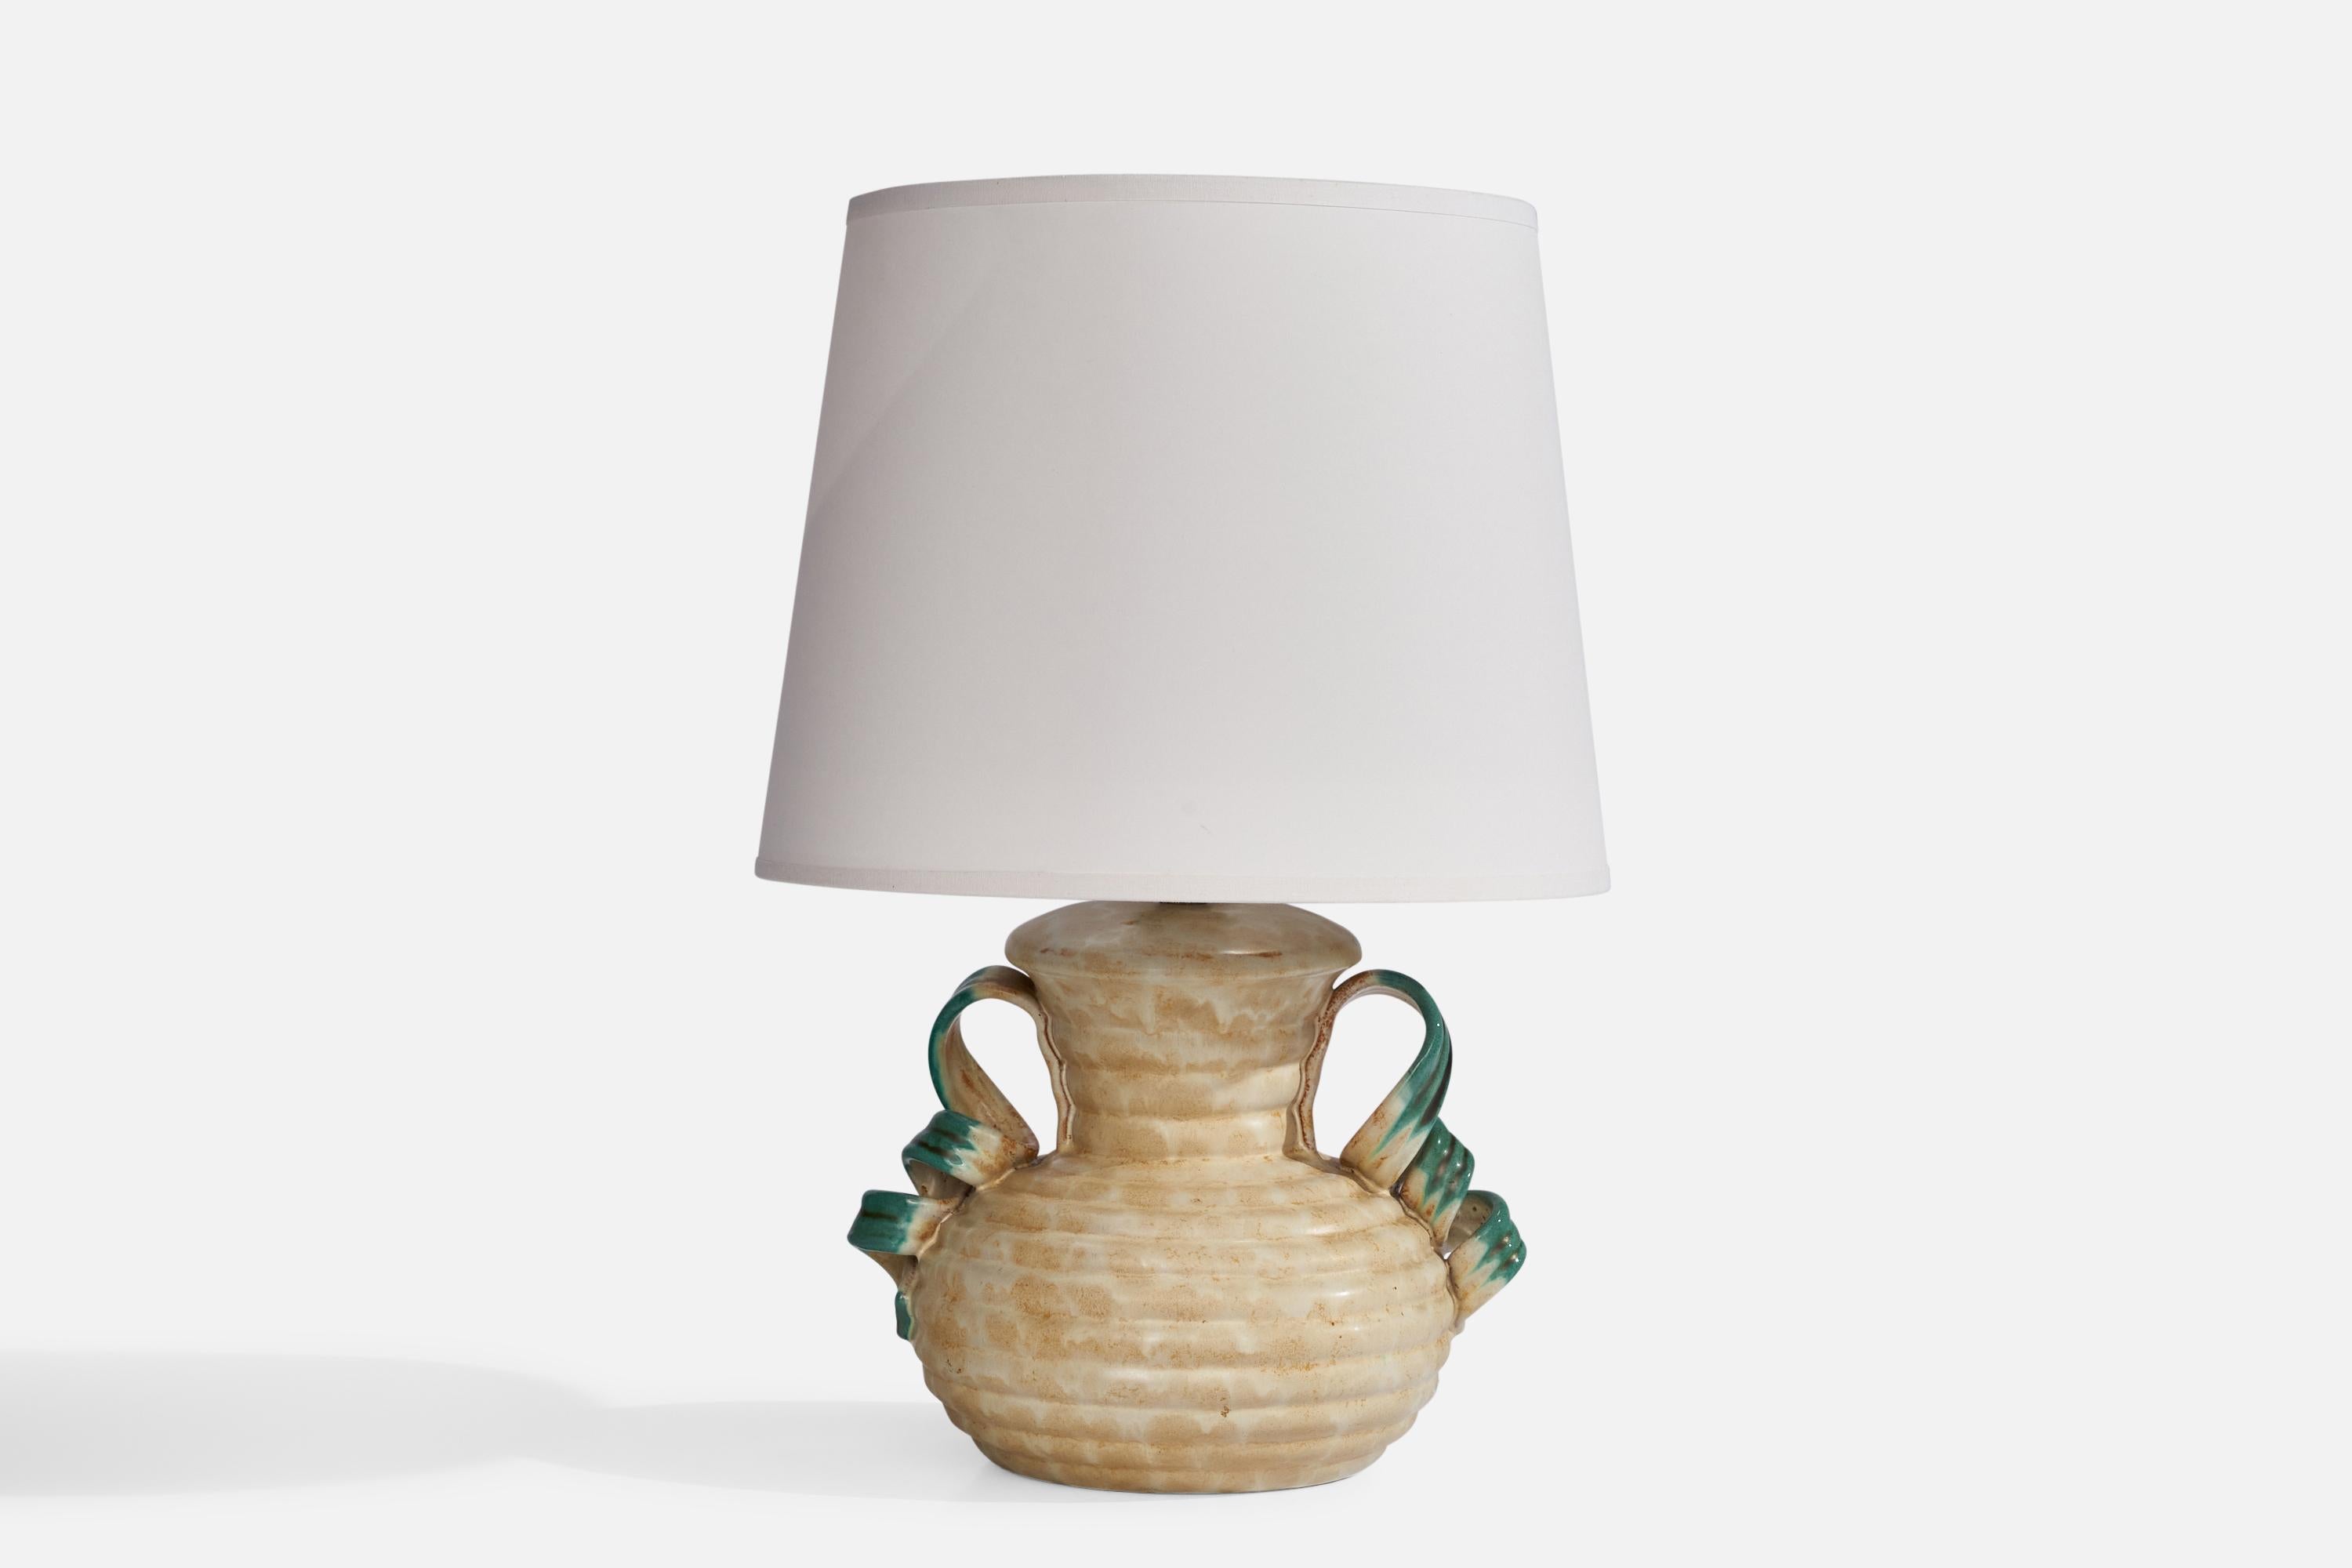 Lampe de table en faïence verte et beige, conçue par Anna-Lisa Thomson et produite par Upsala Ekeby, Suède, années 1930.

Dimensions de la lampe (pouces) : 9